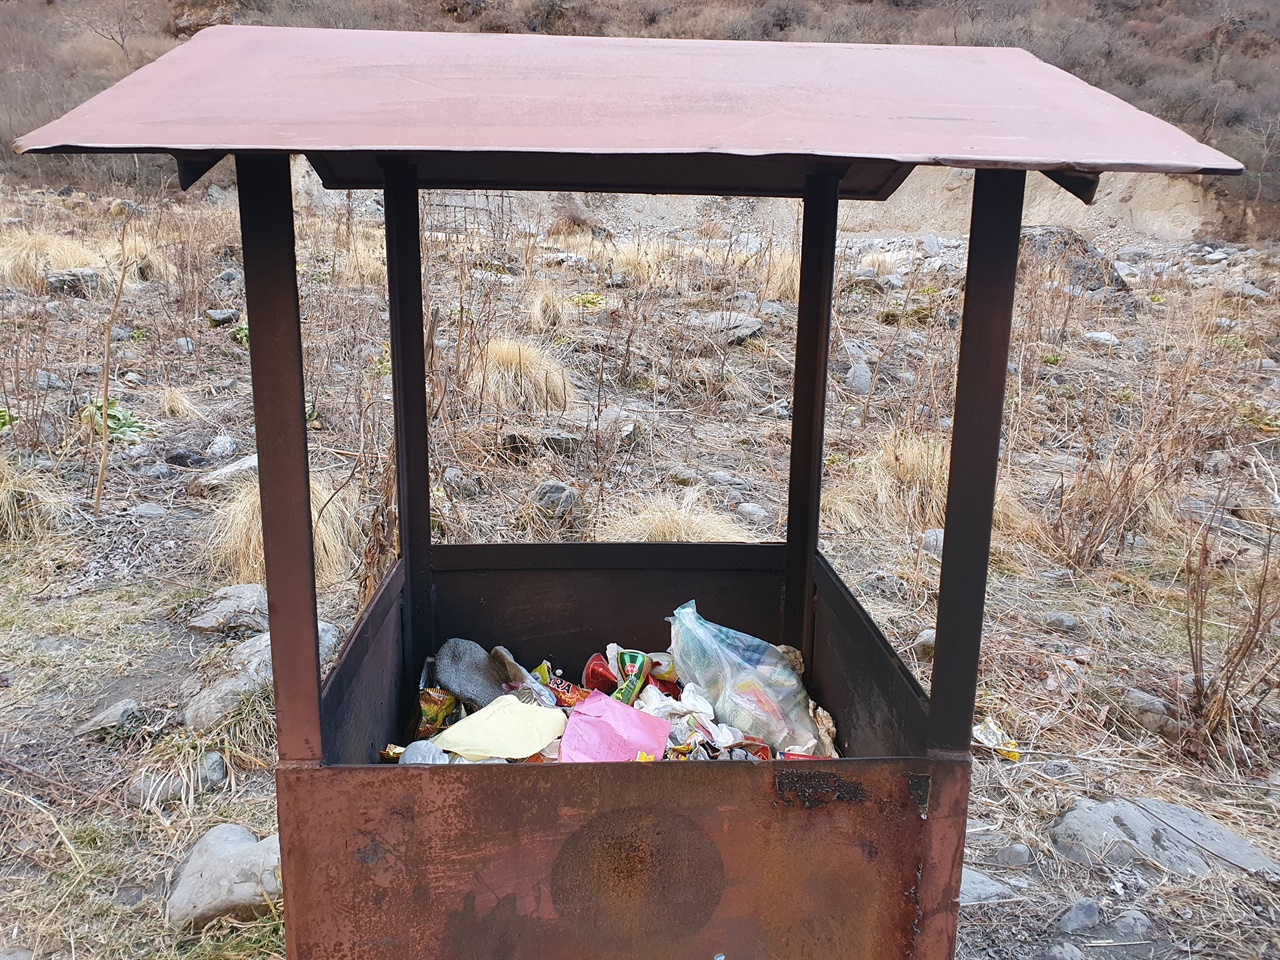 롯지와 롯지 사이에 작은 쓰레기 소각로가 설치되어 있다.